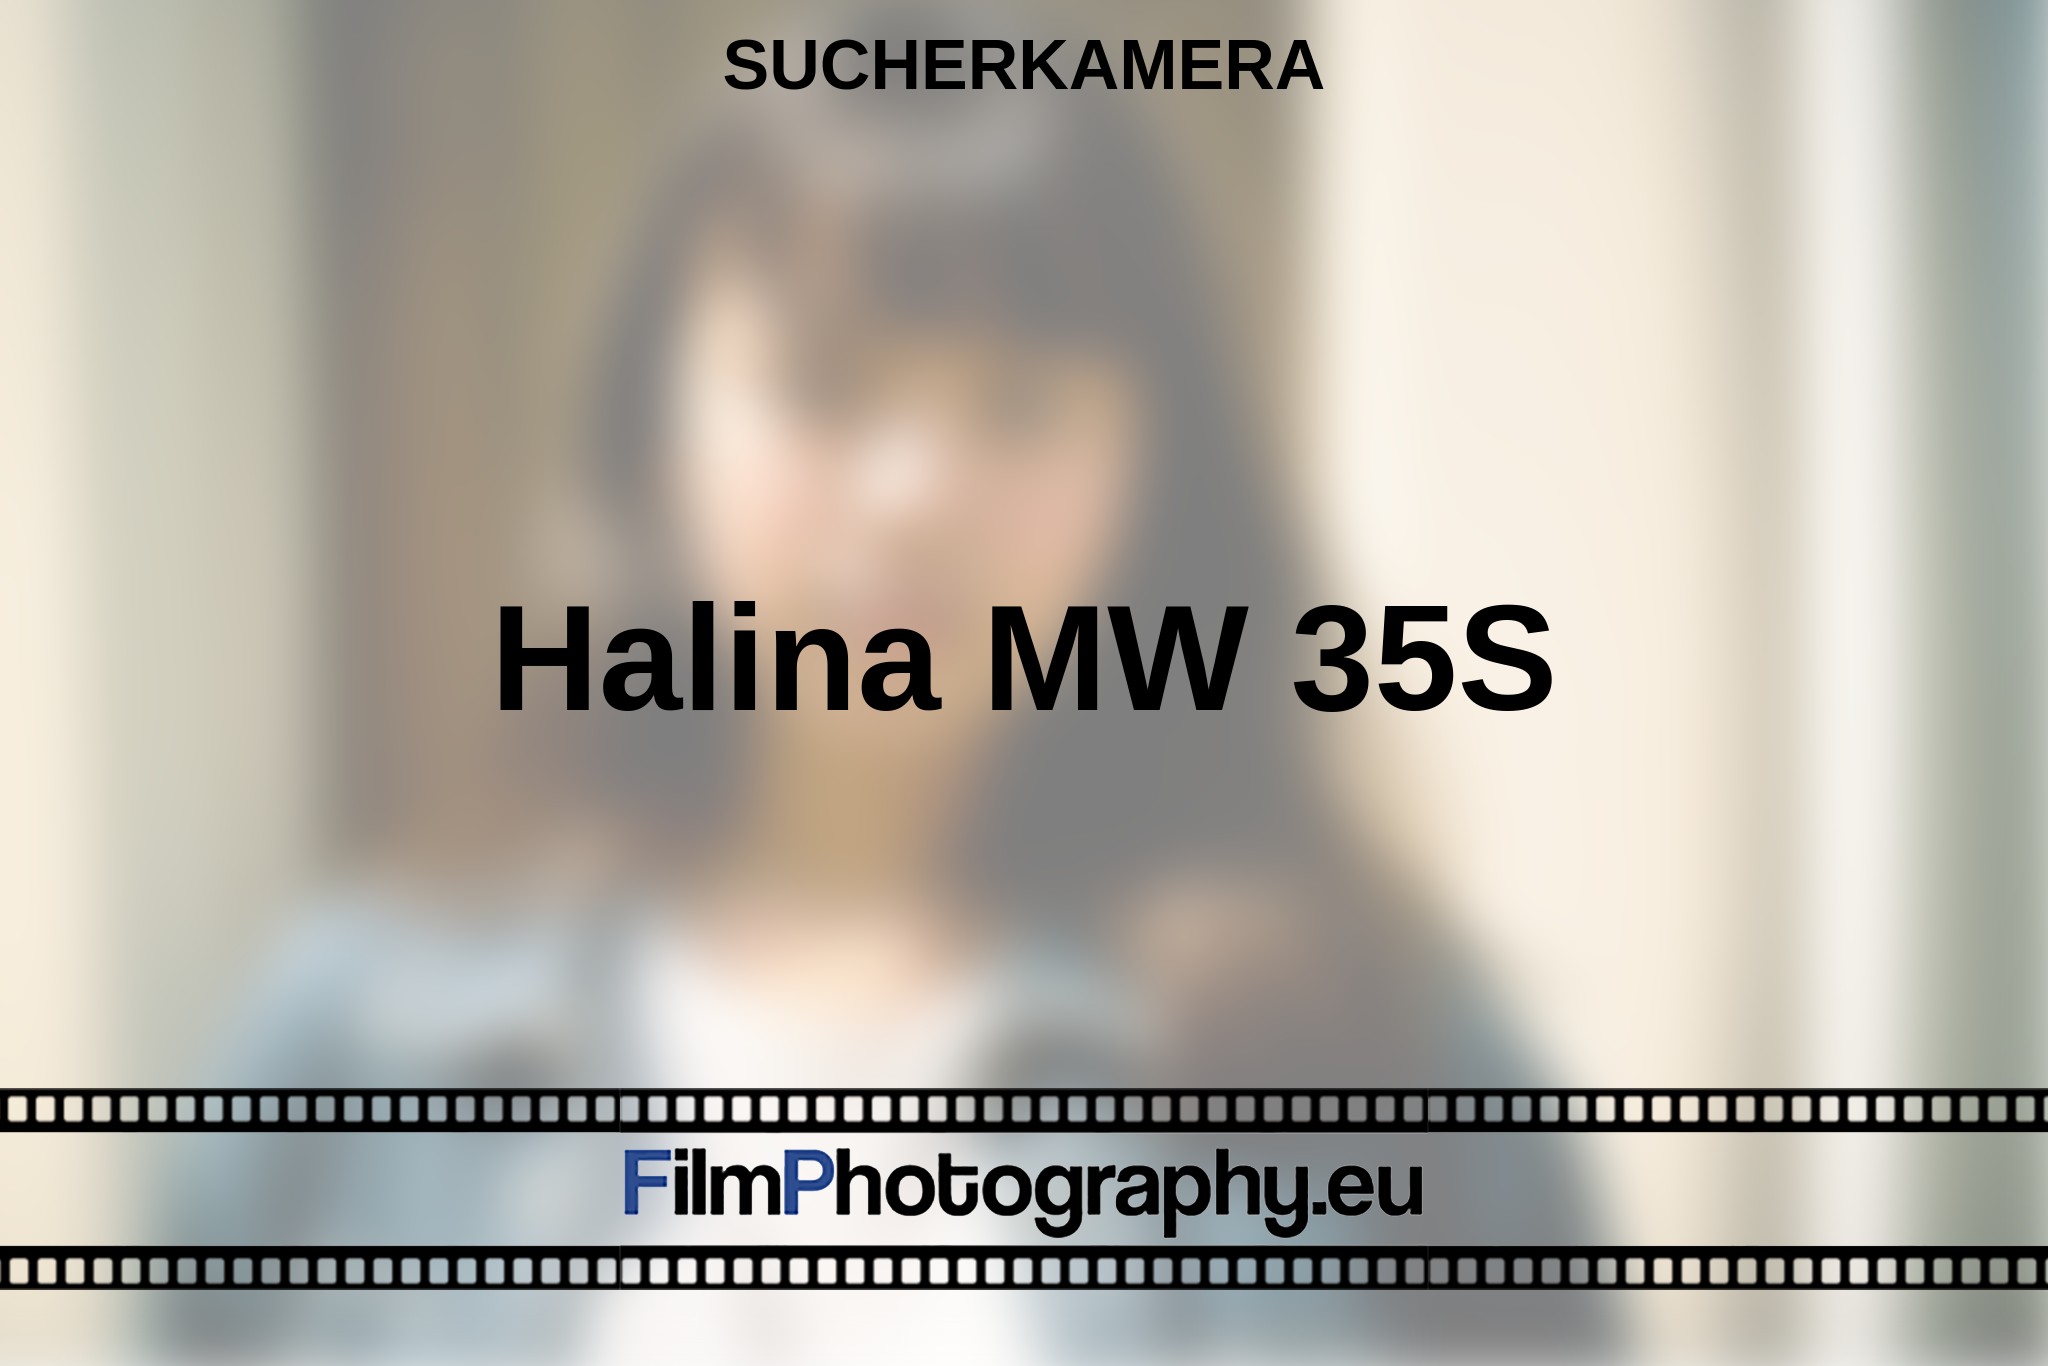 halina-mw-35s-sucherkamera-bnv.jpg